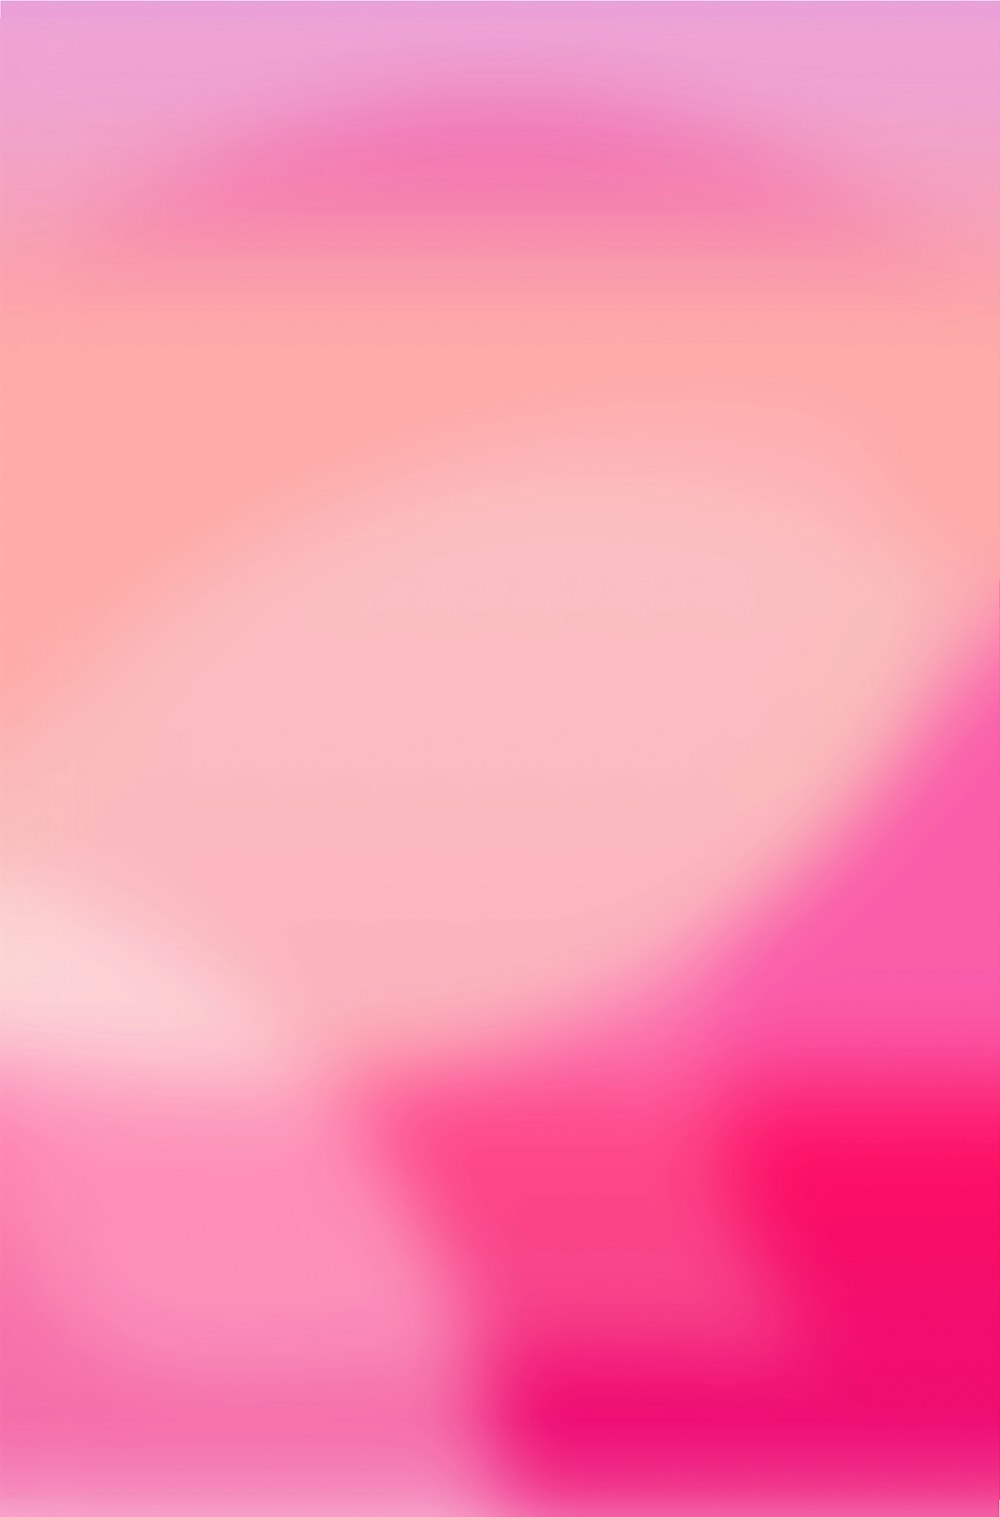 Hình ảnh Pink Gradient Pictures là hiệu ứng chuyển động của màu sắc đầy ấn tượng. Chúng ta sẽ cảm nhận được sự lấp lánh của ánh sáng, từ đó cũng cảm thấy được niềm vui và lạc quan. Hãy tham khảo những hình ảnh này để tạo điểm nhấn mới cho màn hình của bạn các bạn nhé! Translation: Pink Gradient Pictures images are the impressive color gradient effect. We will feel the sparkle of light, from which we can feel joy and optimism. Refer to these images to create a new highlight for your screen!